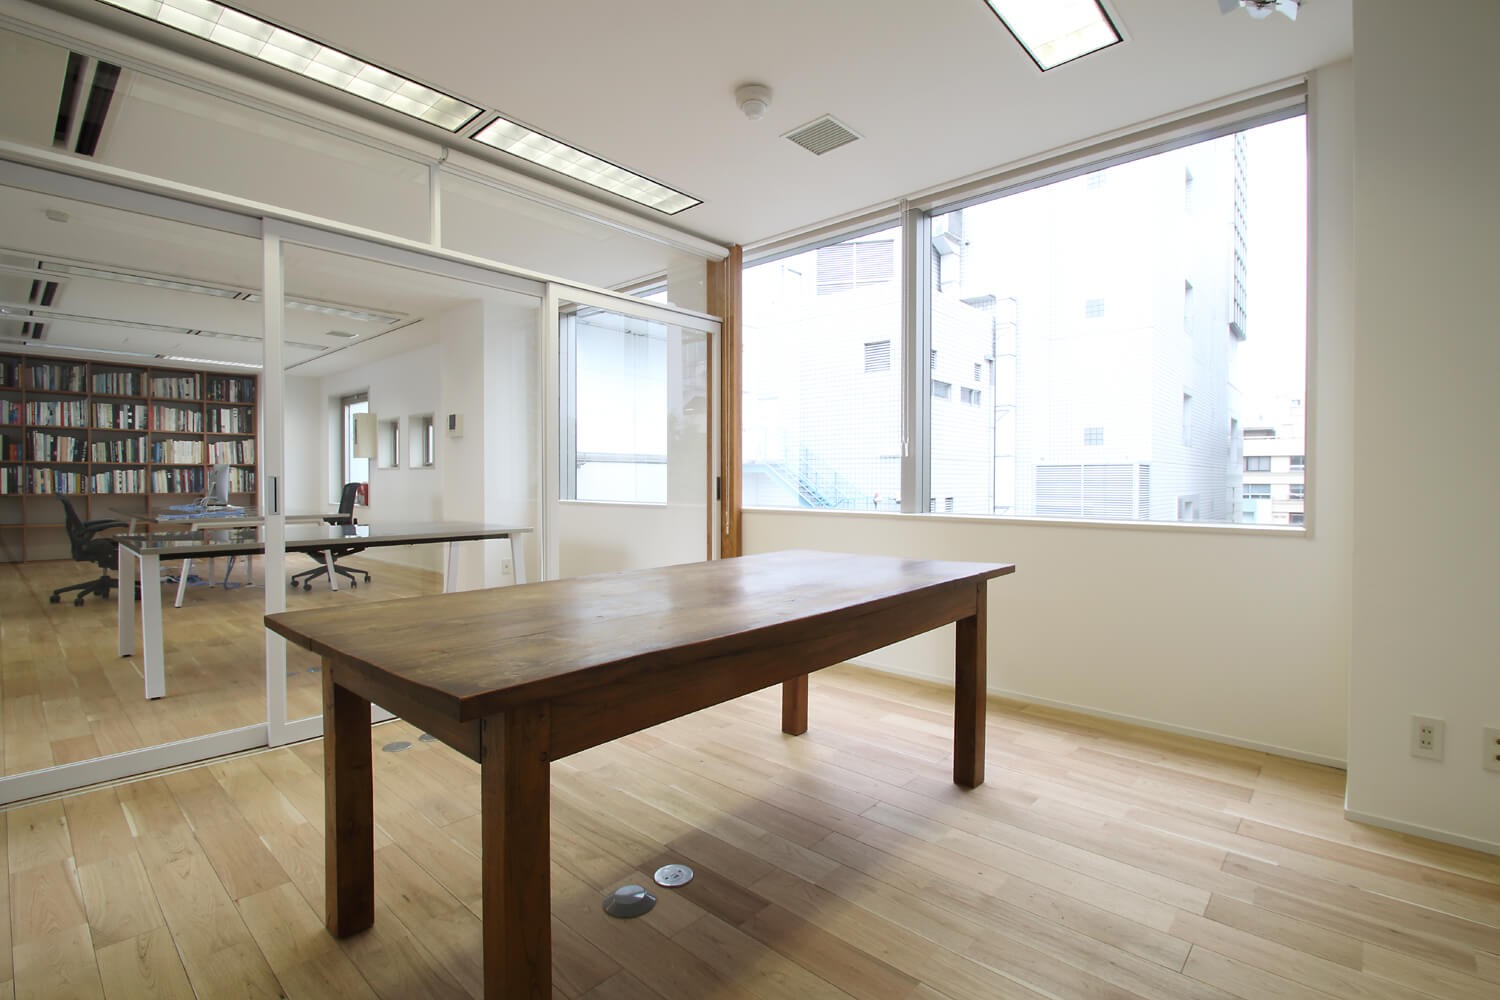 その他事例：会議室（居心地の良いオフィス空間でクリエイティブな発想を。）